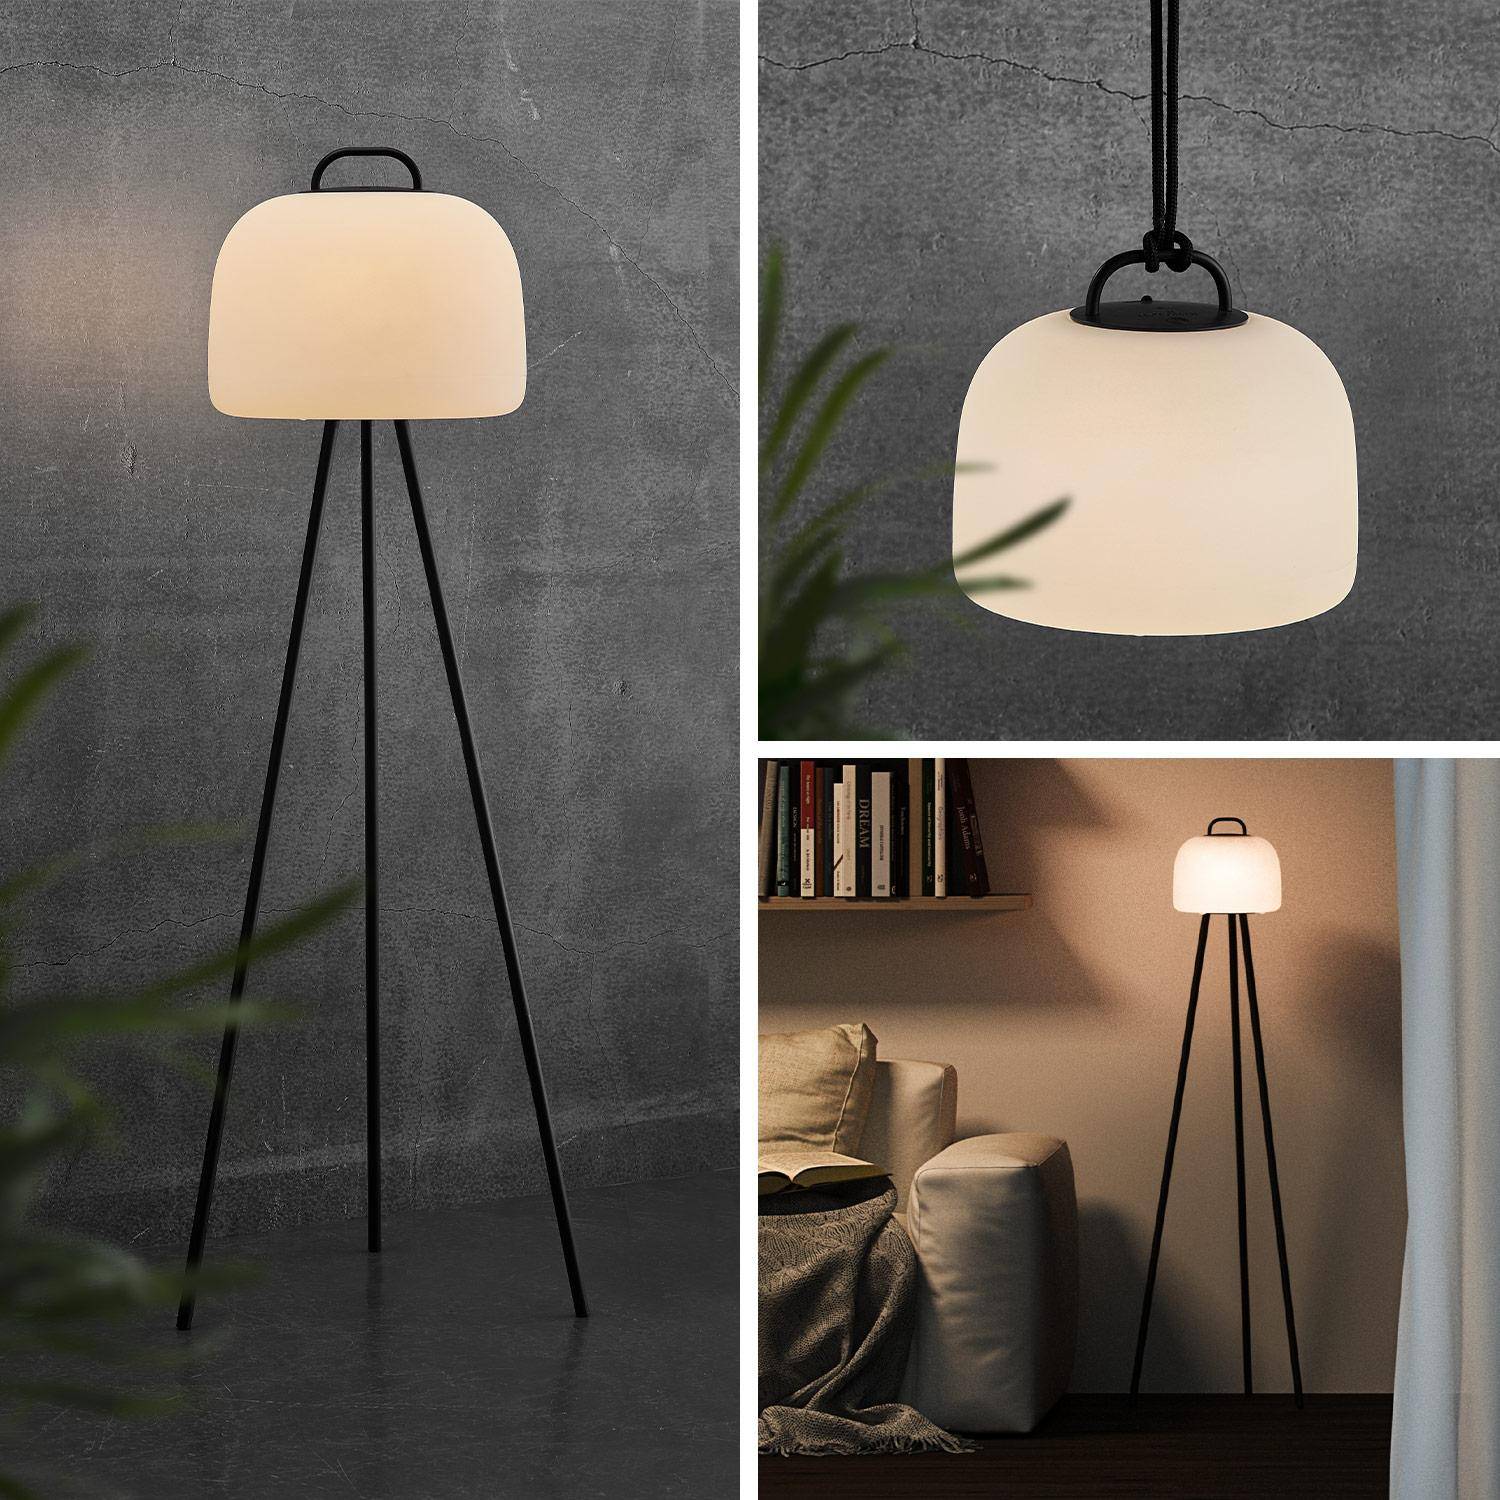 Lampe extérieure LED 3 en 1 – TRIPADA XL– Lampe extérieure en plastique, Ø36cm rechargeable, à suspendre, avec trépied 1m et corde Photo1